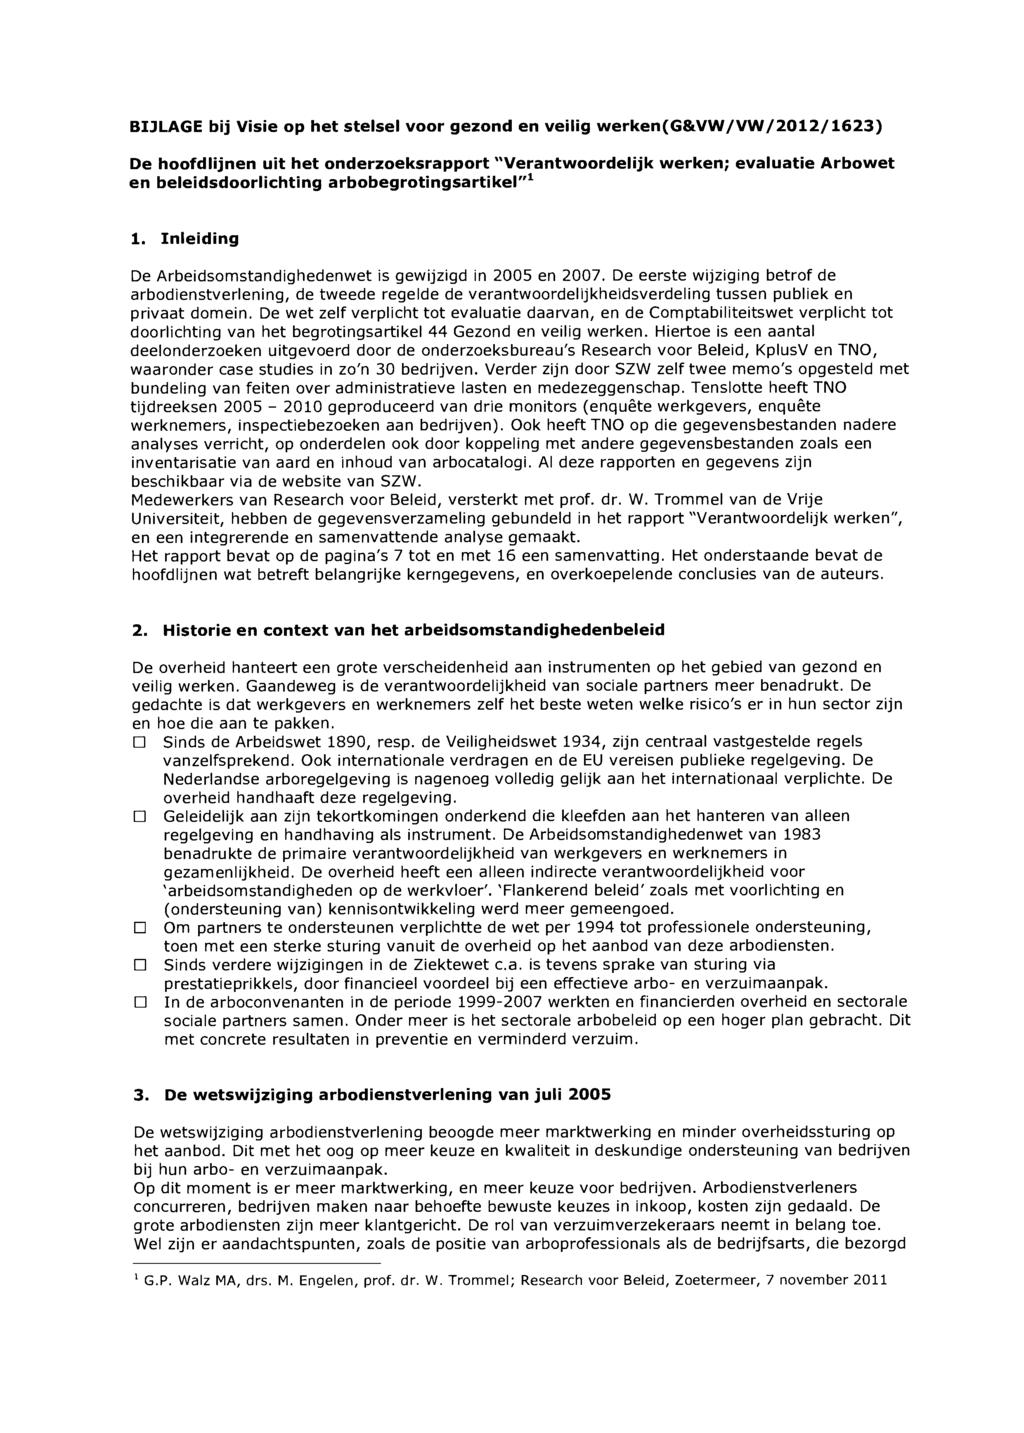 BIJLAGE bij Visie op het stelsel voor gezond en veilig werken(g&vw/vw/2012/1623) De hoofdlijnen uit het onderzoeksrapport "Verantwoordelijk werken; evaluatie Arbowet en beleidsdoorlichting